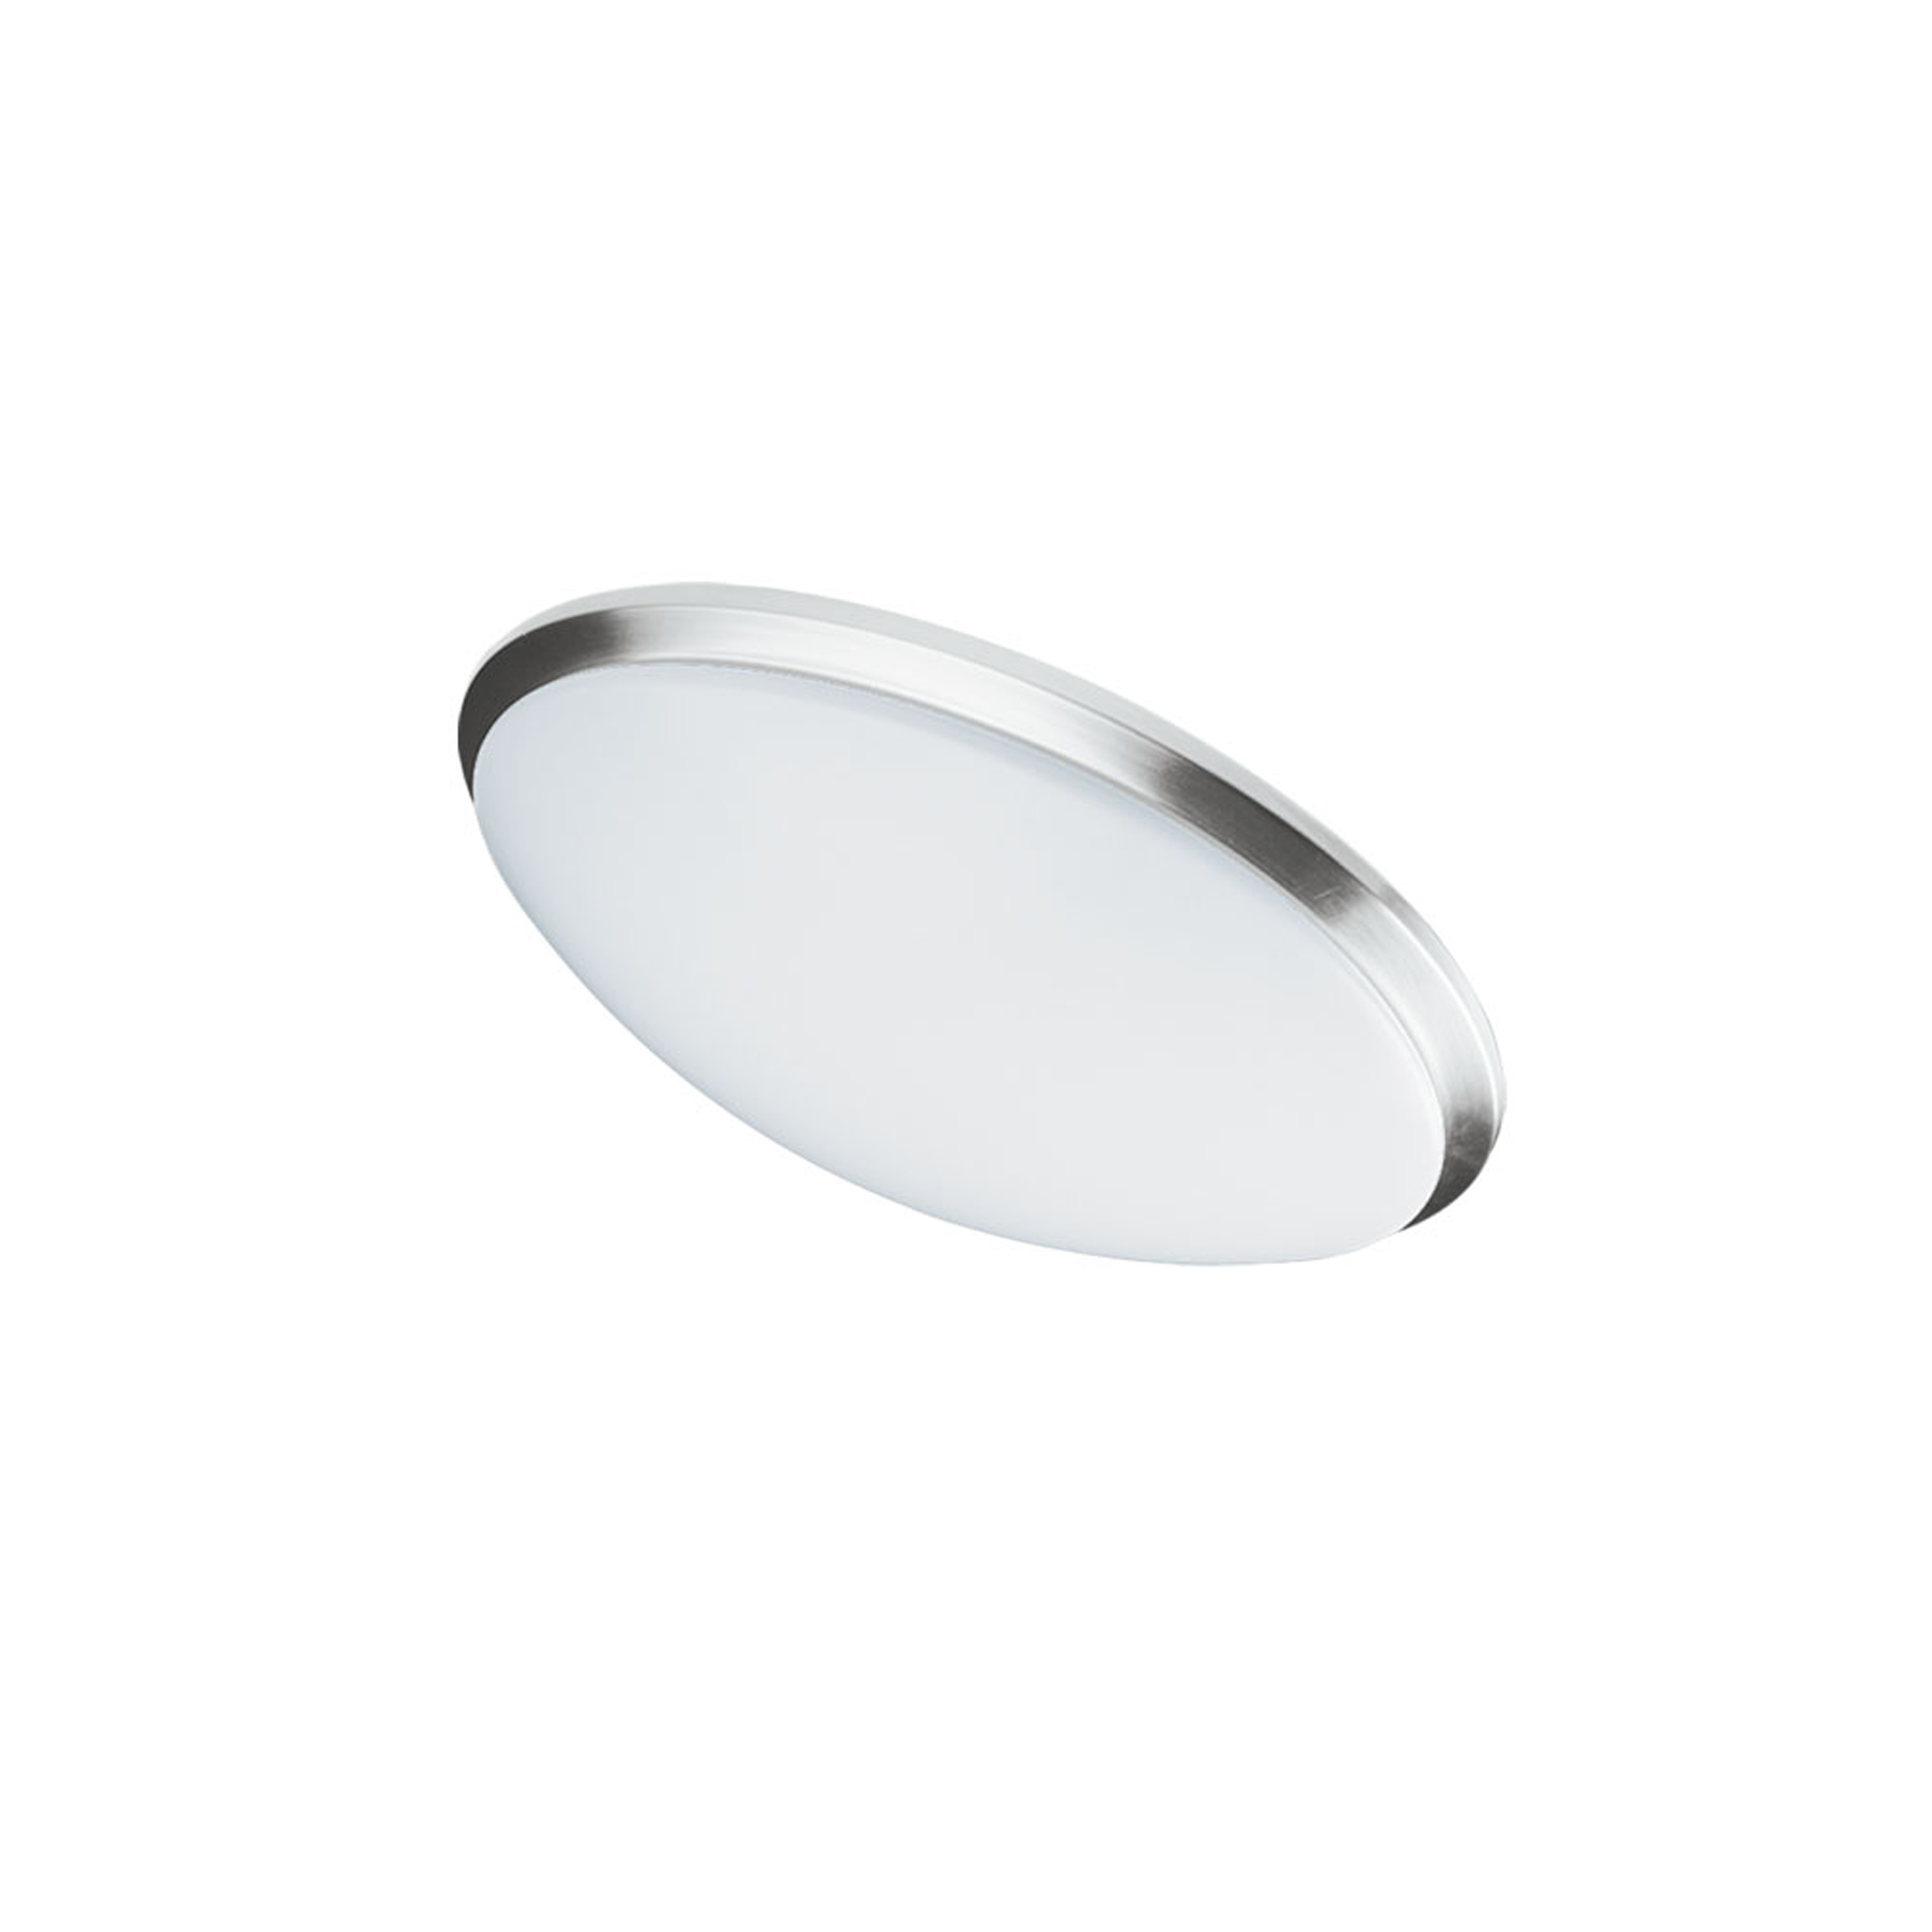 LED Ceiling Flush 14W 280mm (11"),Satin Chrome